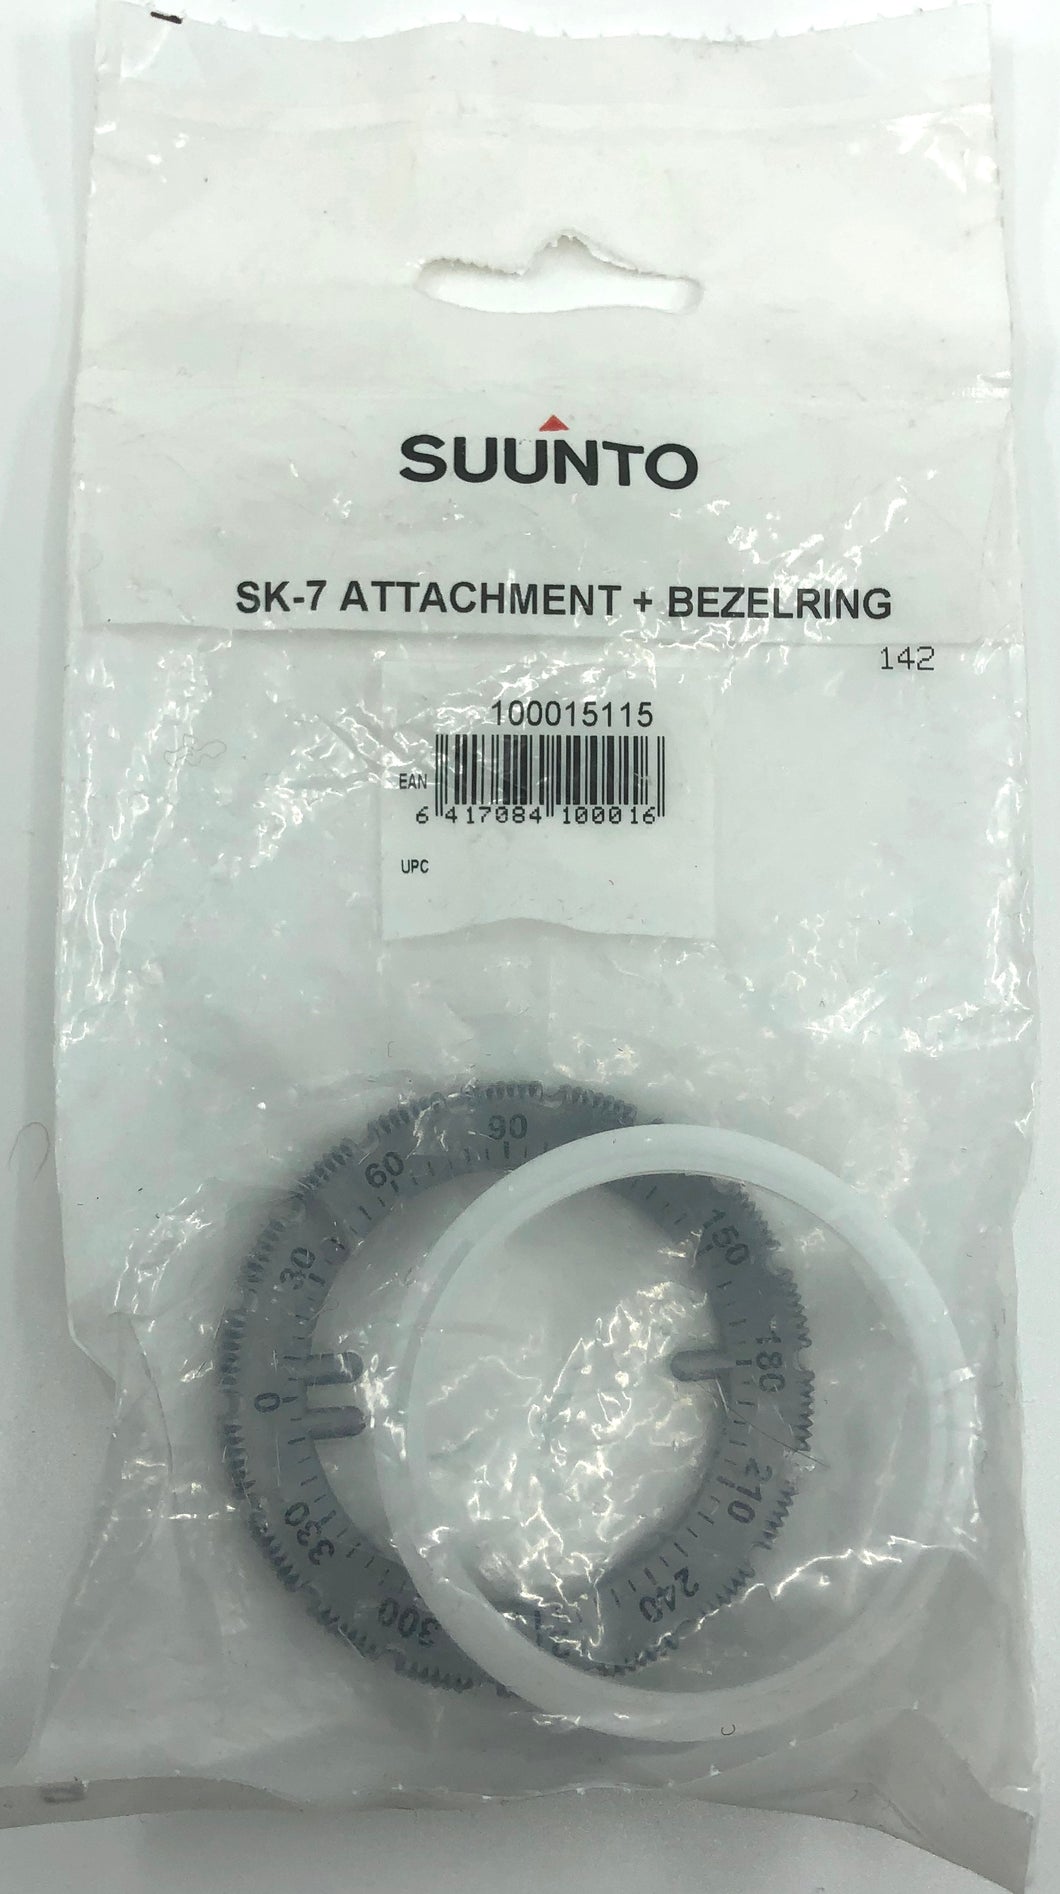 Suunto SK-7/8 attachment and Bezel ring